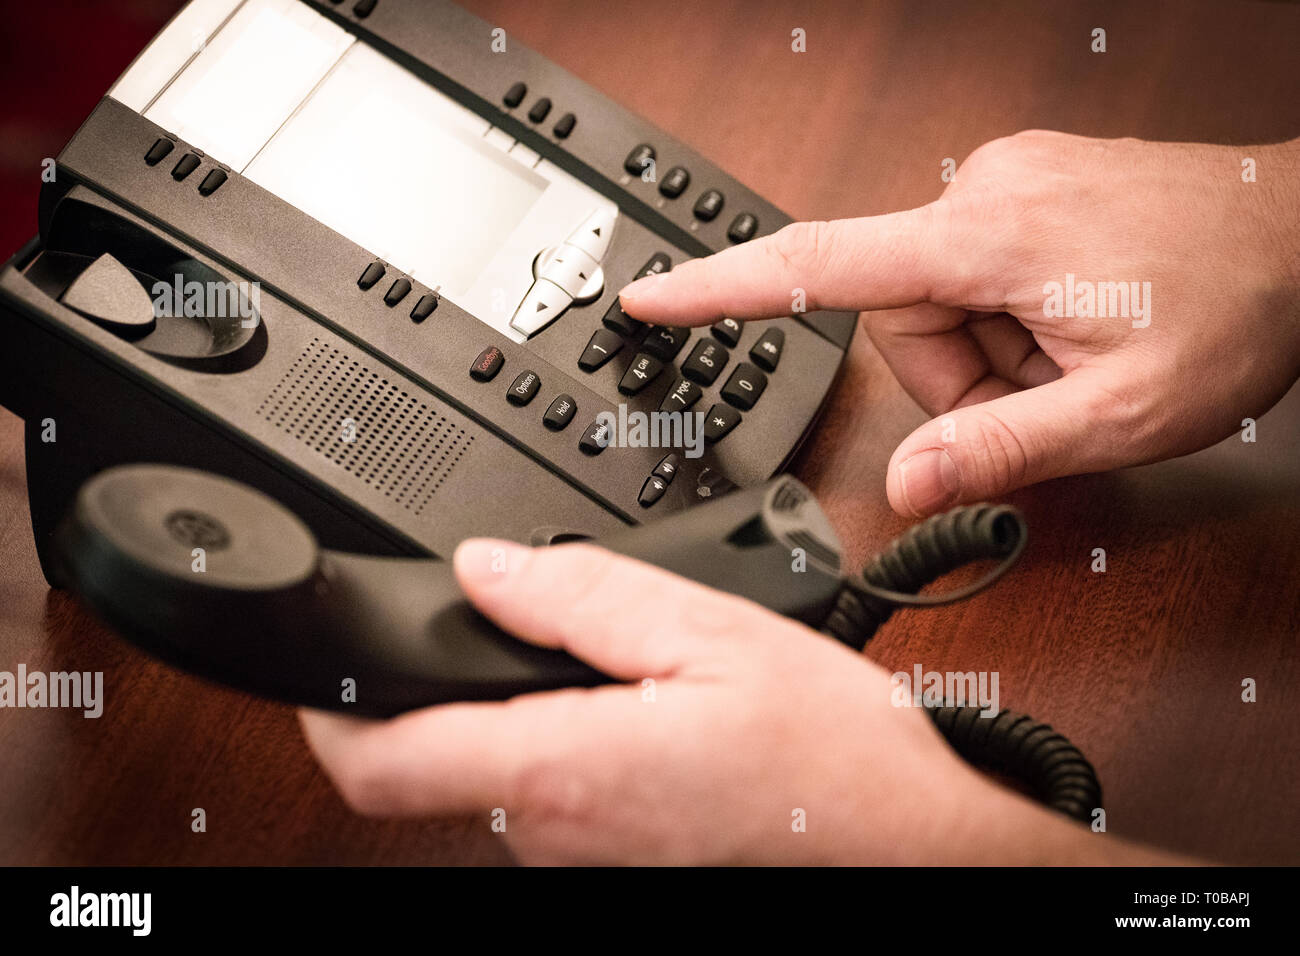 Fabricants de téléphone appel sur téléphone à clavier. Banque D'Images